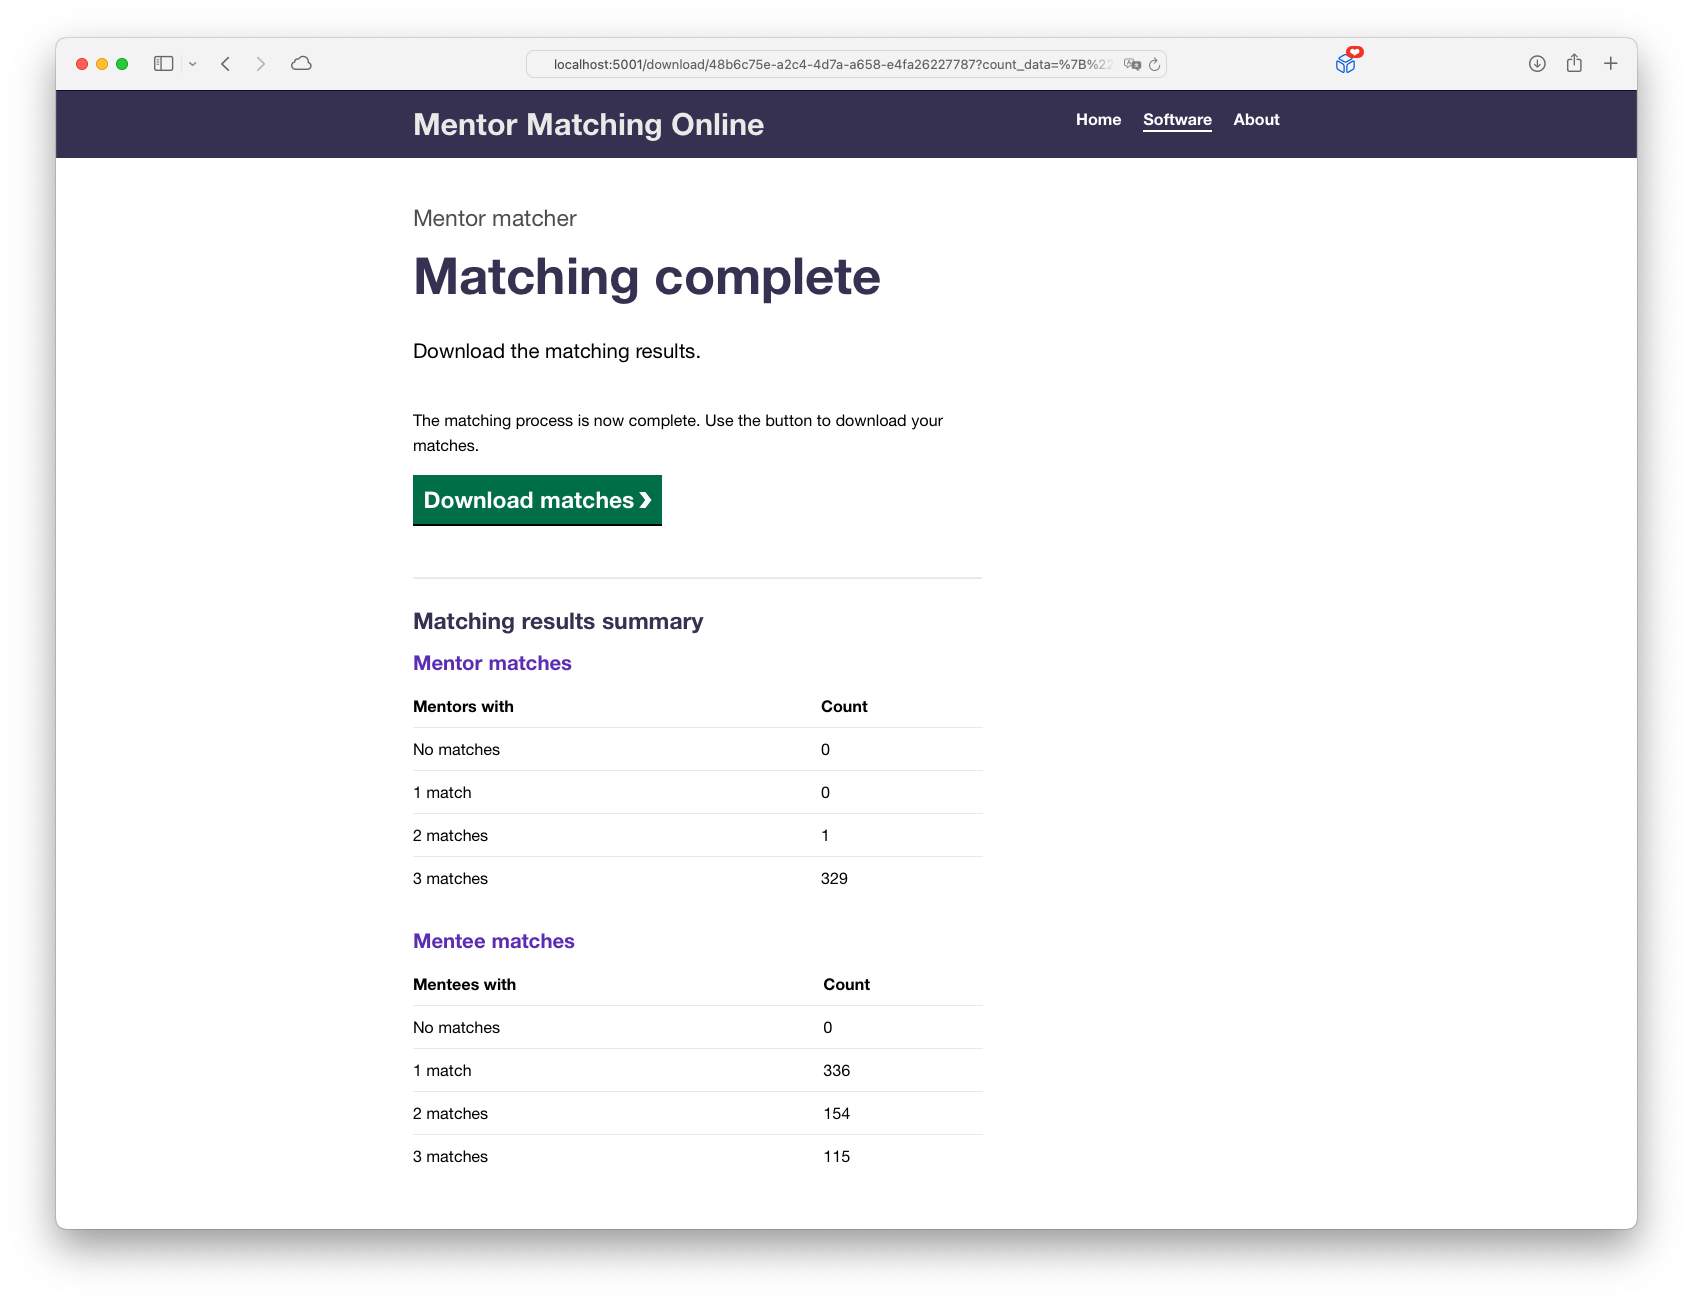 A screenshot of the mentor matching software.